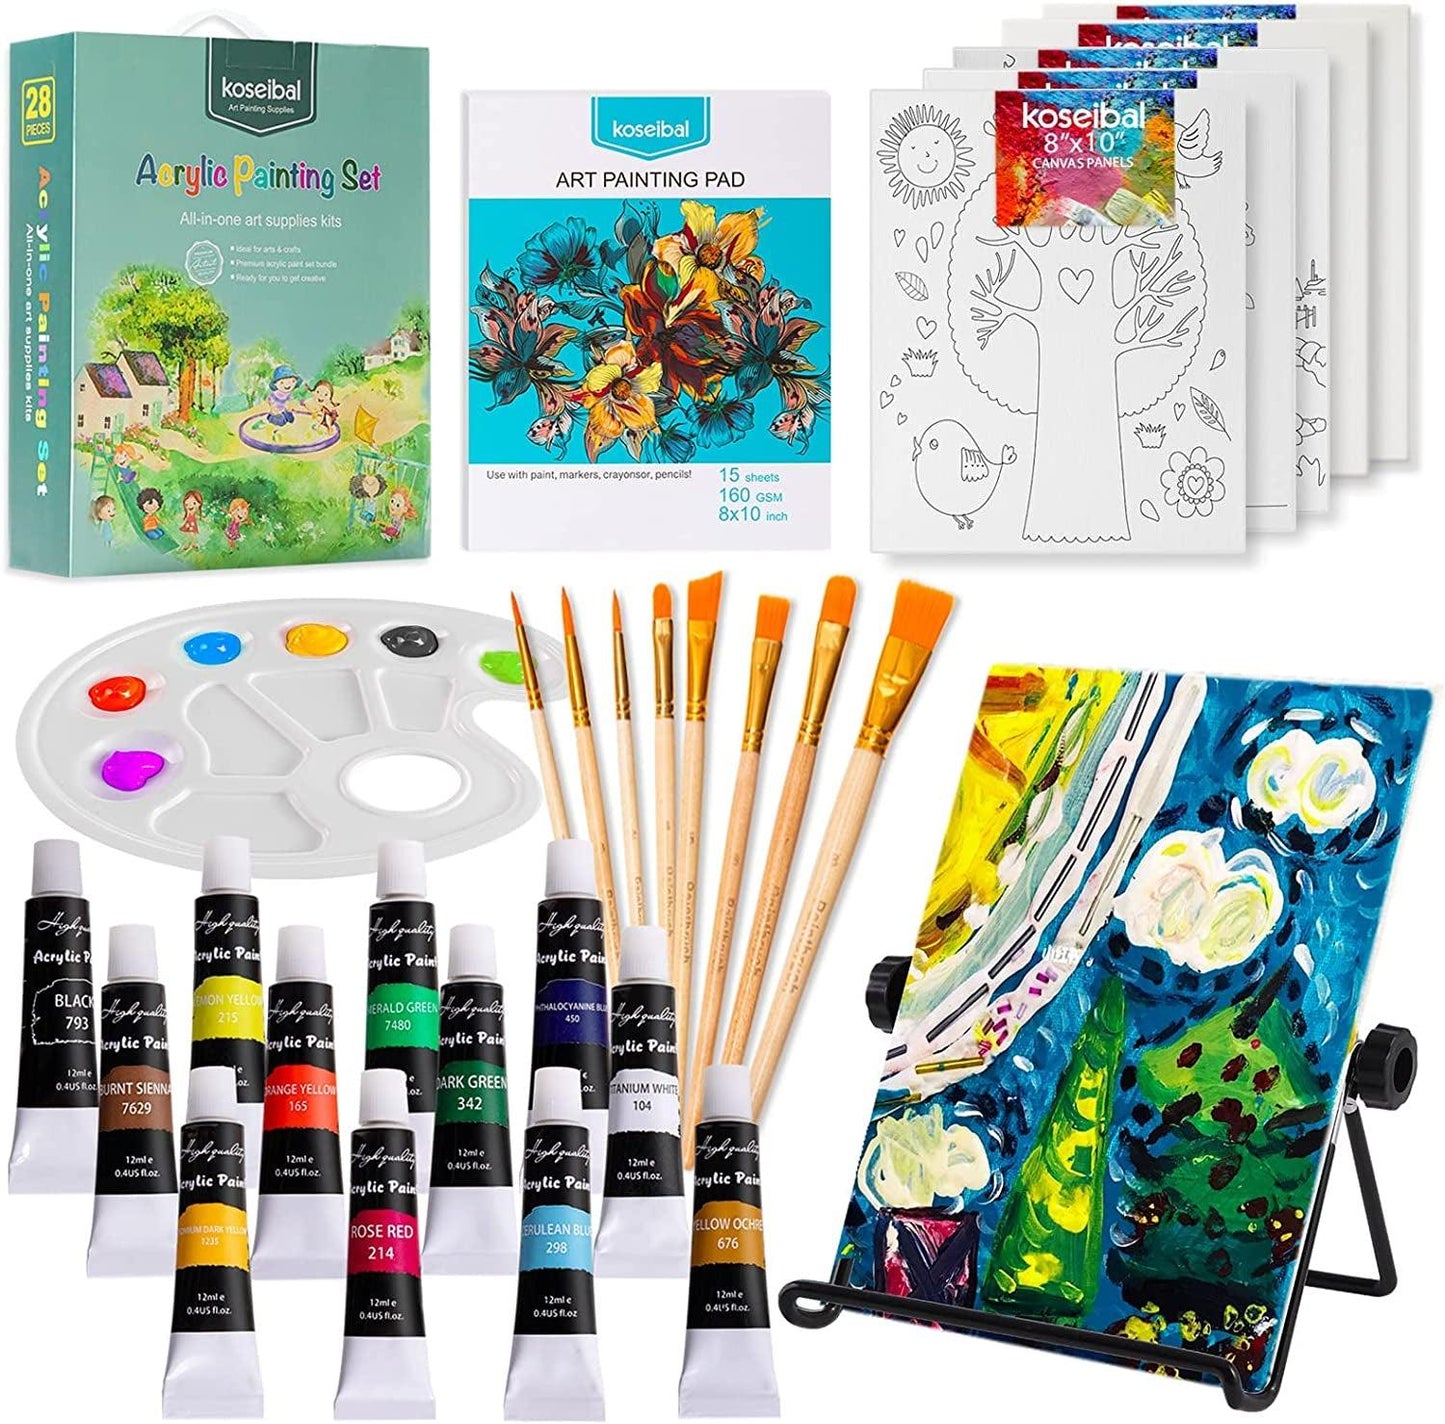 Paint Set for Kids,Art Supplies for Kids 9-12 Includes 12 Acrylic Paints,Table Top Easel,3 Paint Brushes,12 AcrylPapier,Paint Palette,Pencil,Eraser,Pe